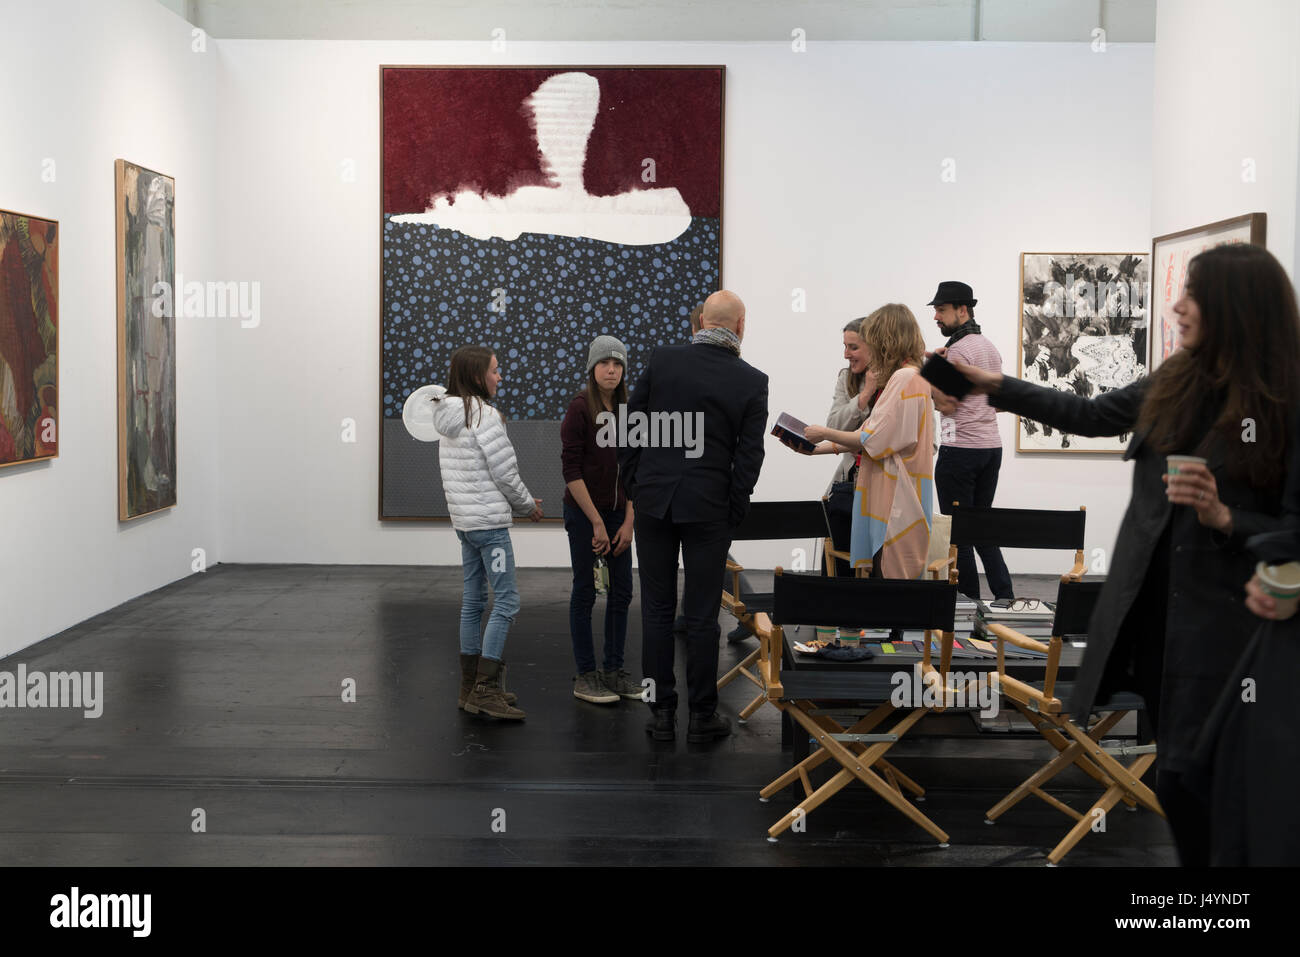 Las personas interesadas están hablando con la gente de ventas de una galería de Dinamarca. La gran imagen de fondo formuladas por Sigmar Polke. Foto de stock